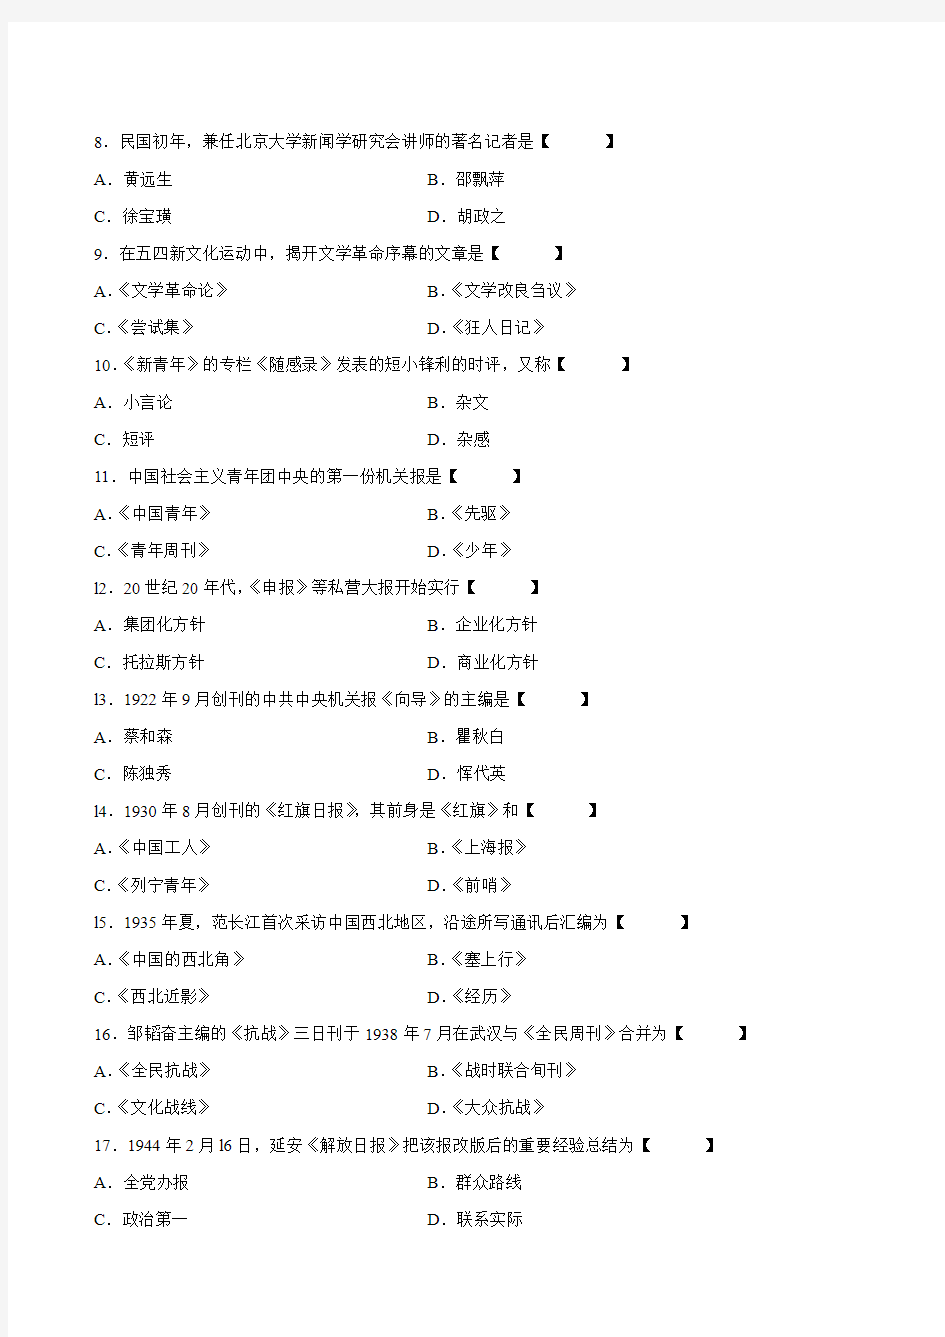 真题版2009年07月自学考试00653《中国新闻事业史》历年真题